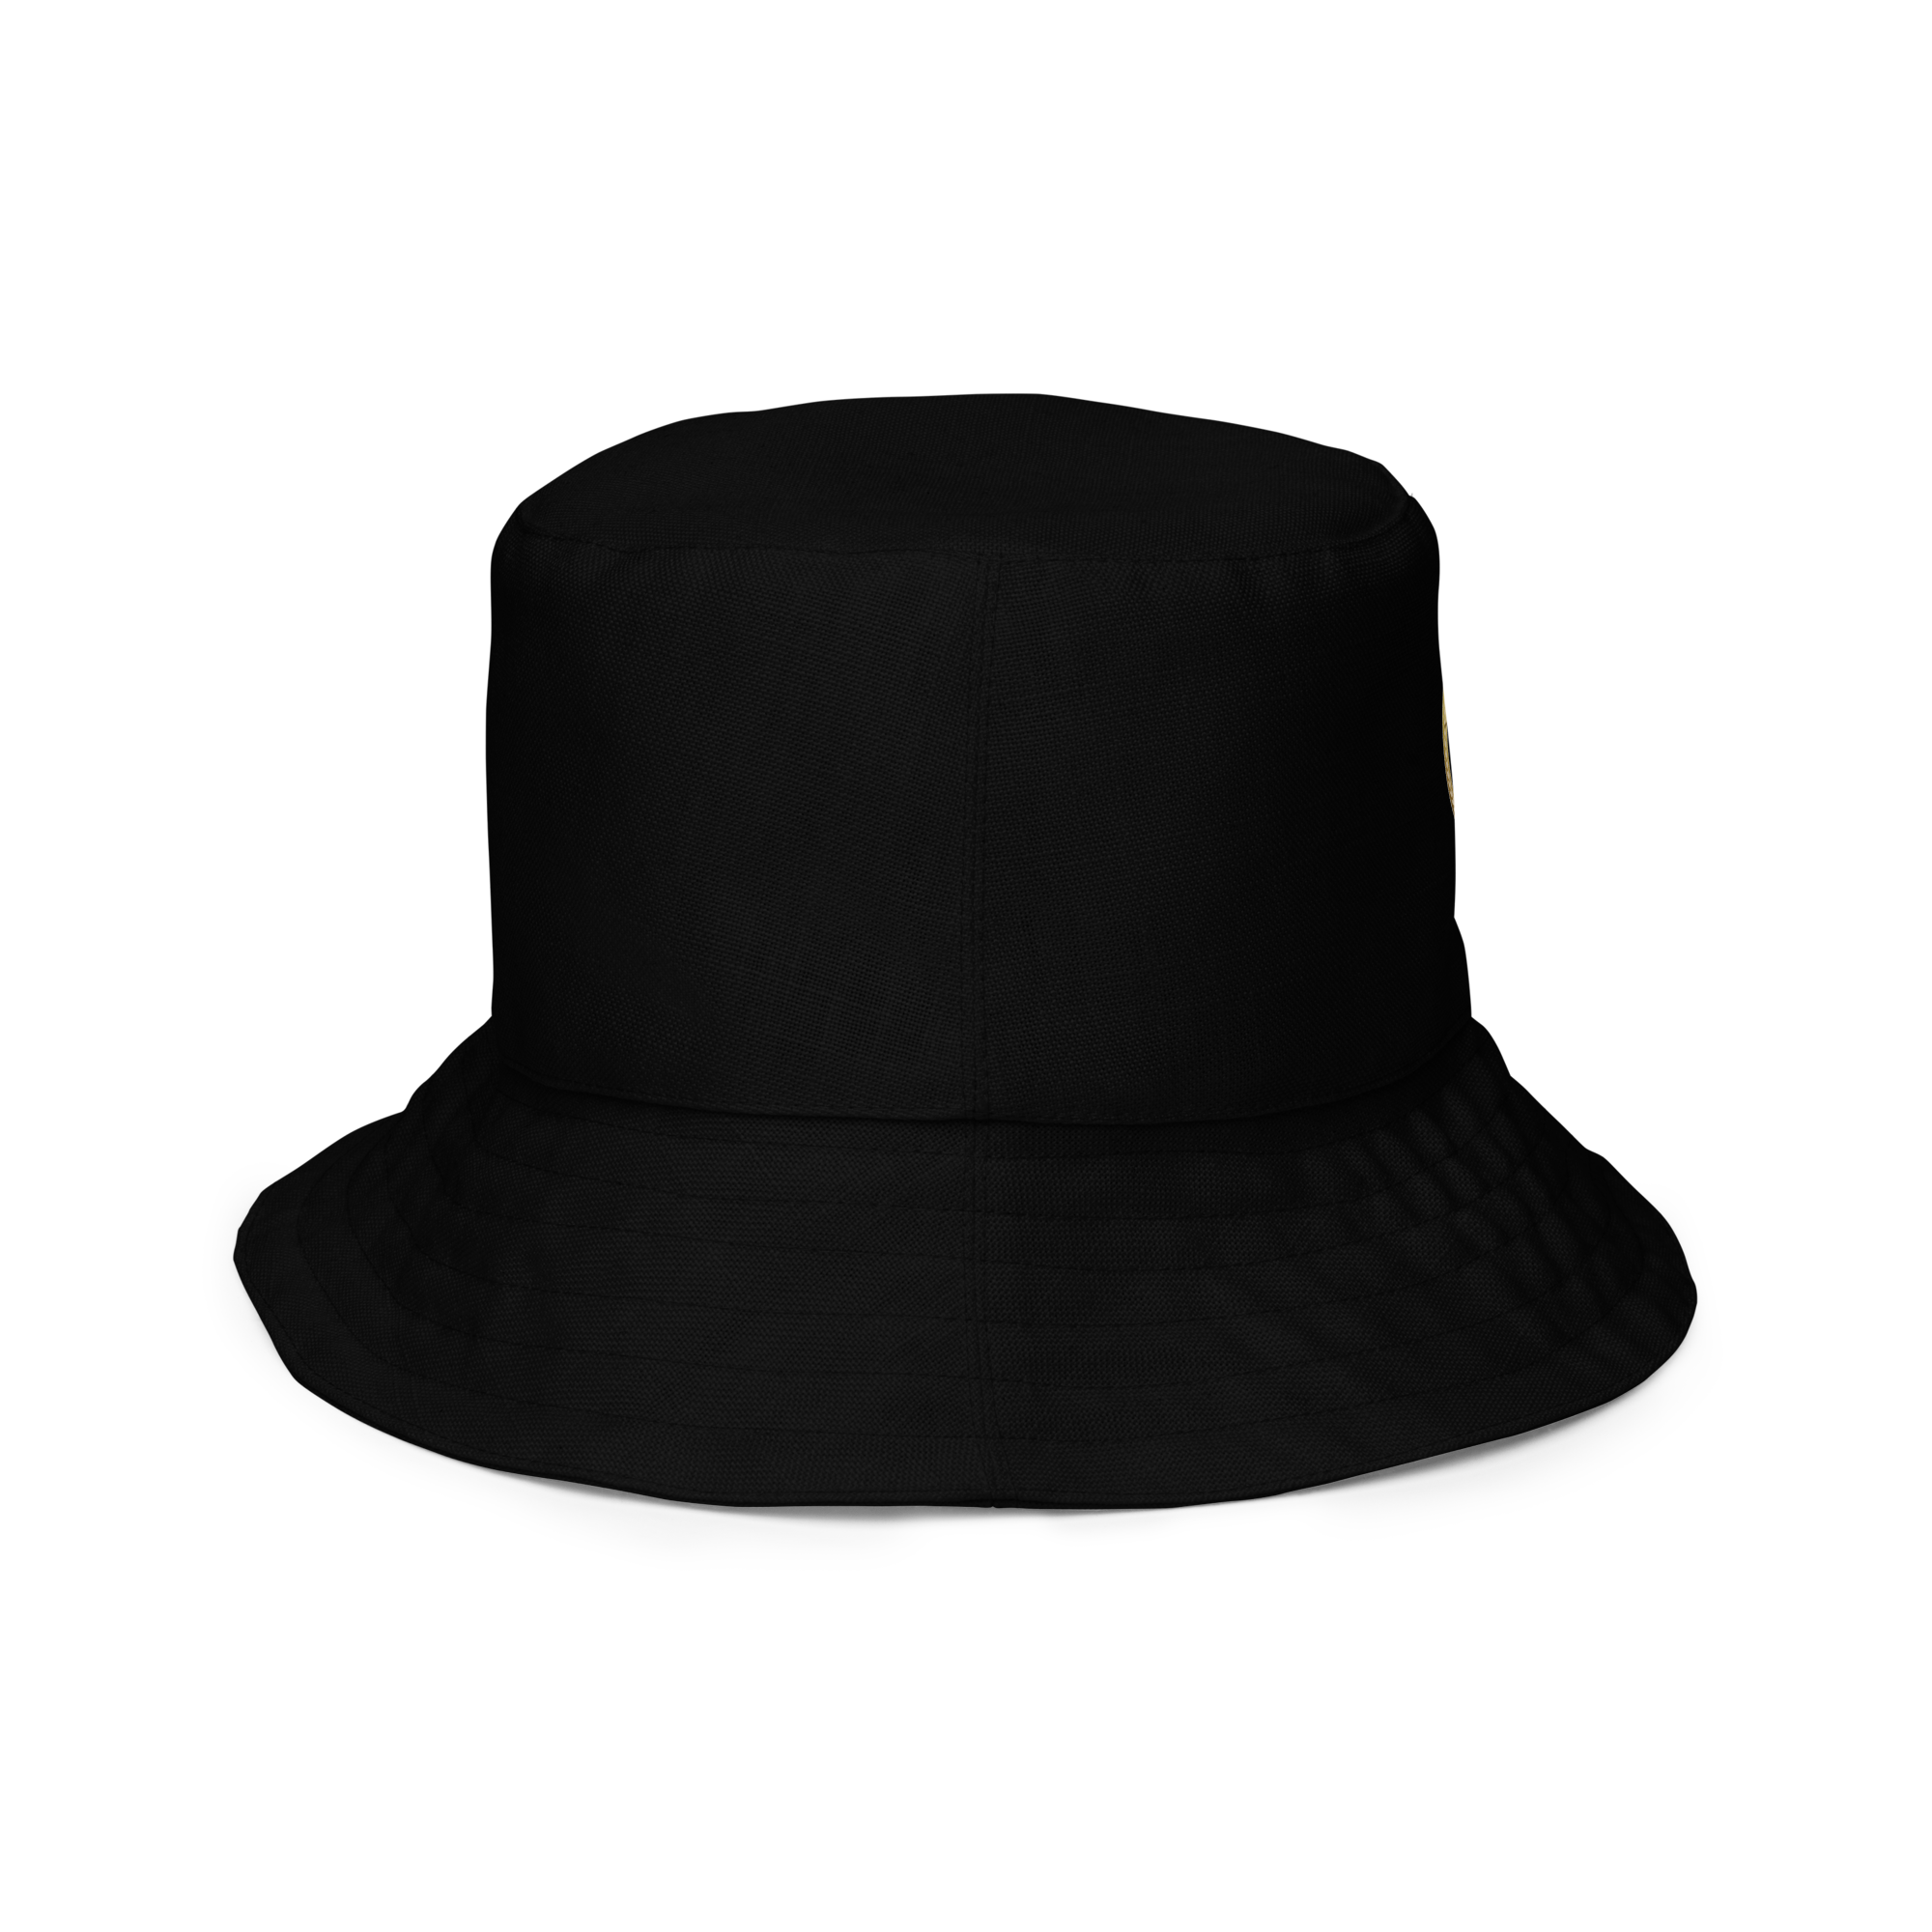 Wings of Haru Reversible bucket hat